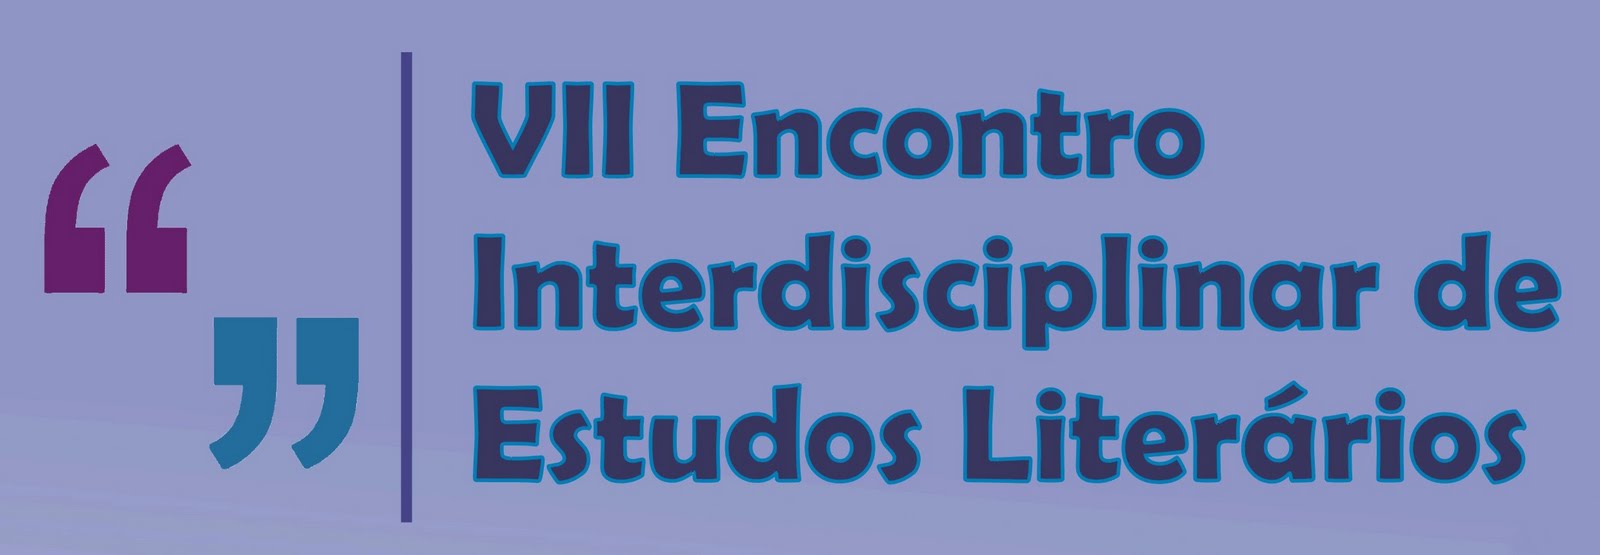 VII Encontro Interdisciplinar de Estudos Literários